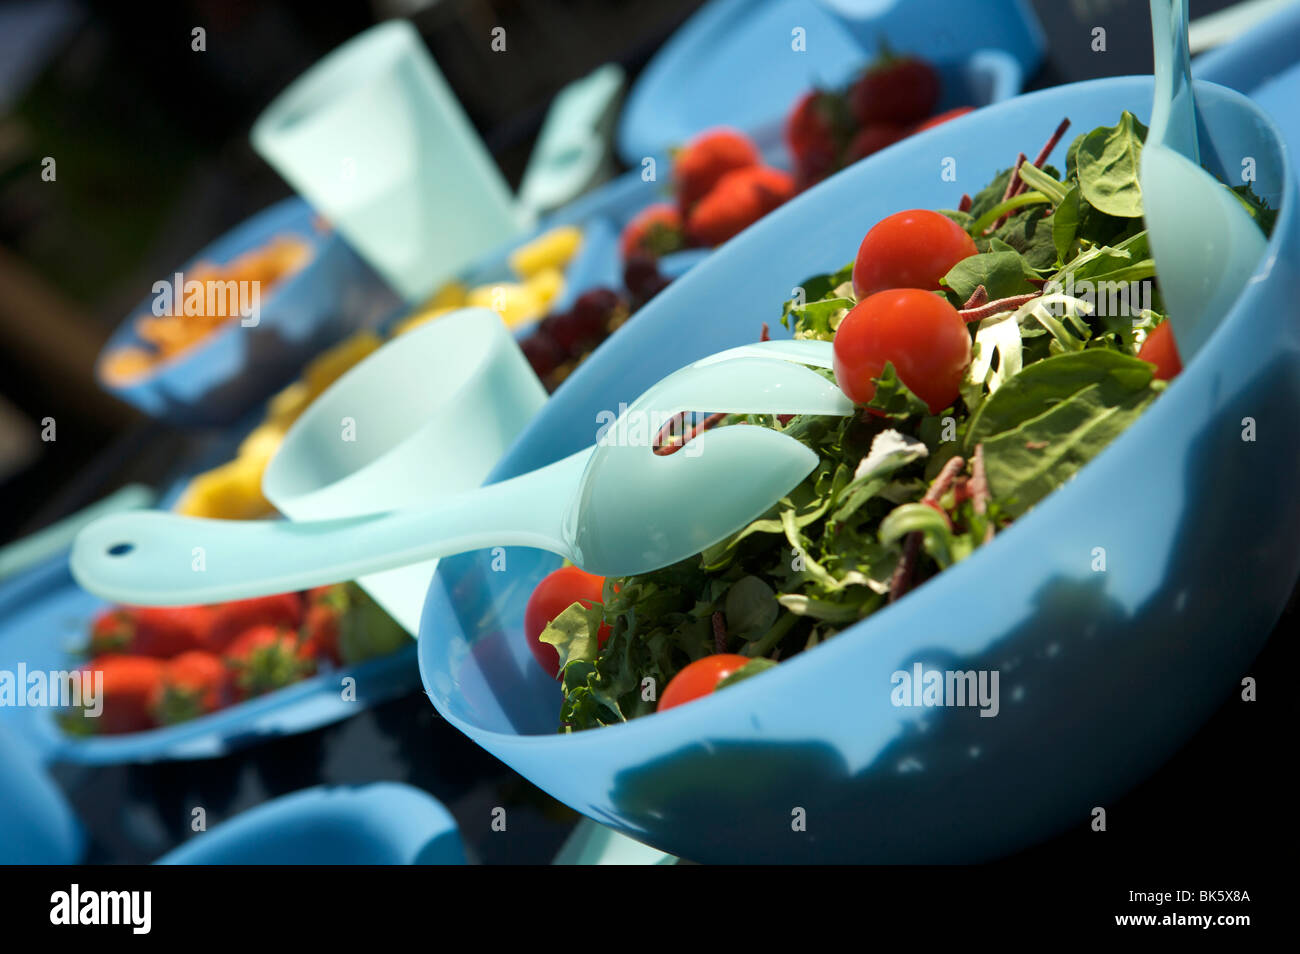 Pasto all'aperto o un picnic su una tavola nera con plastica blu bocce, coppe e brocche con frutta e insalata mista Foto Stock